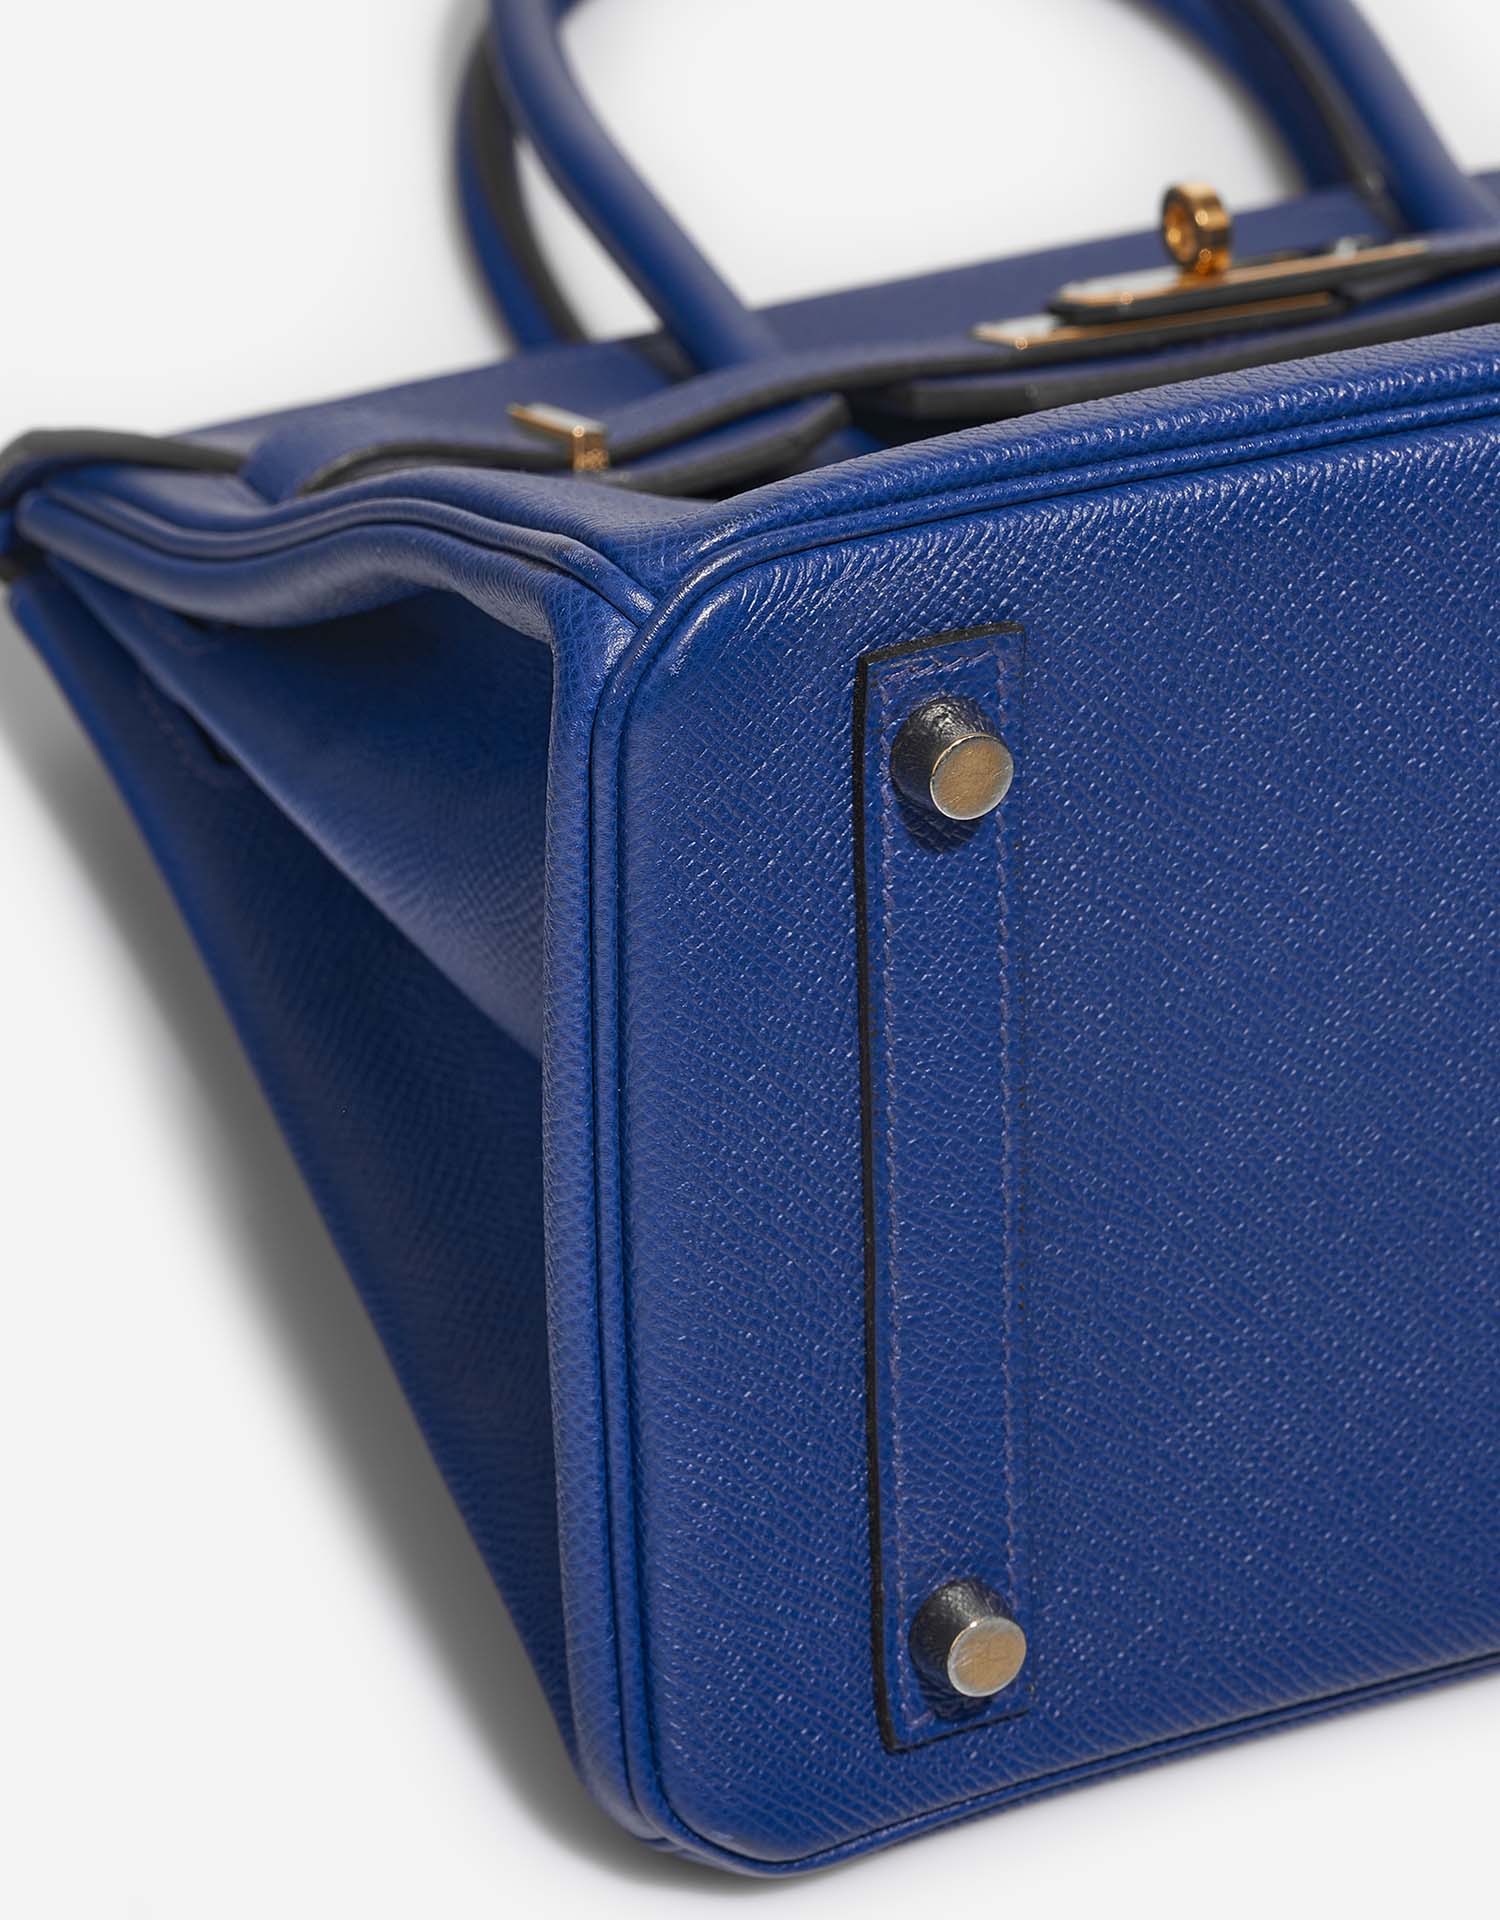 Hermès Birkin 30 BleuElectrique signes d'usure| Vendez votre sac de créateur sur Saclab.com